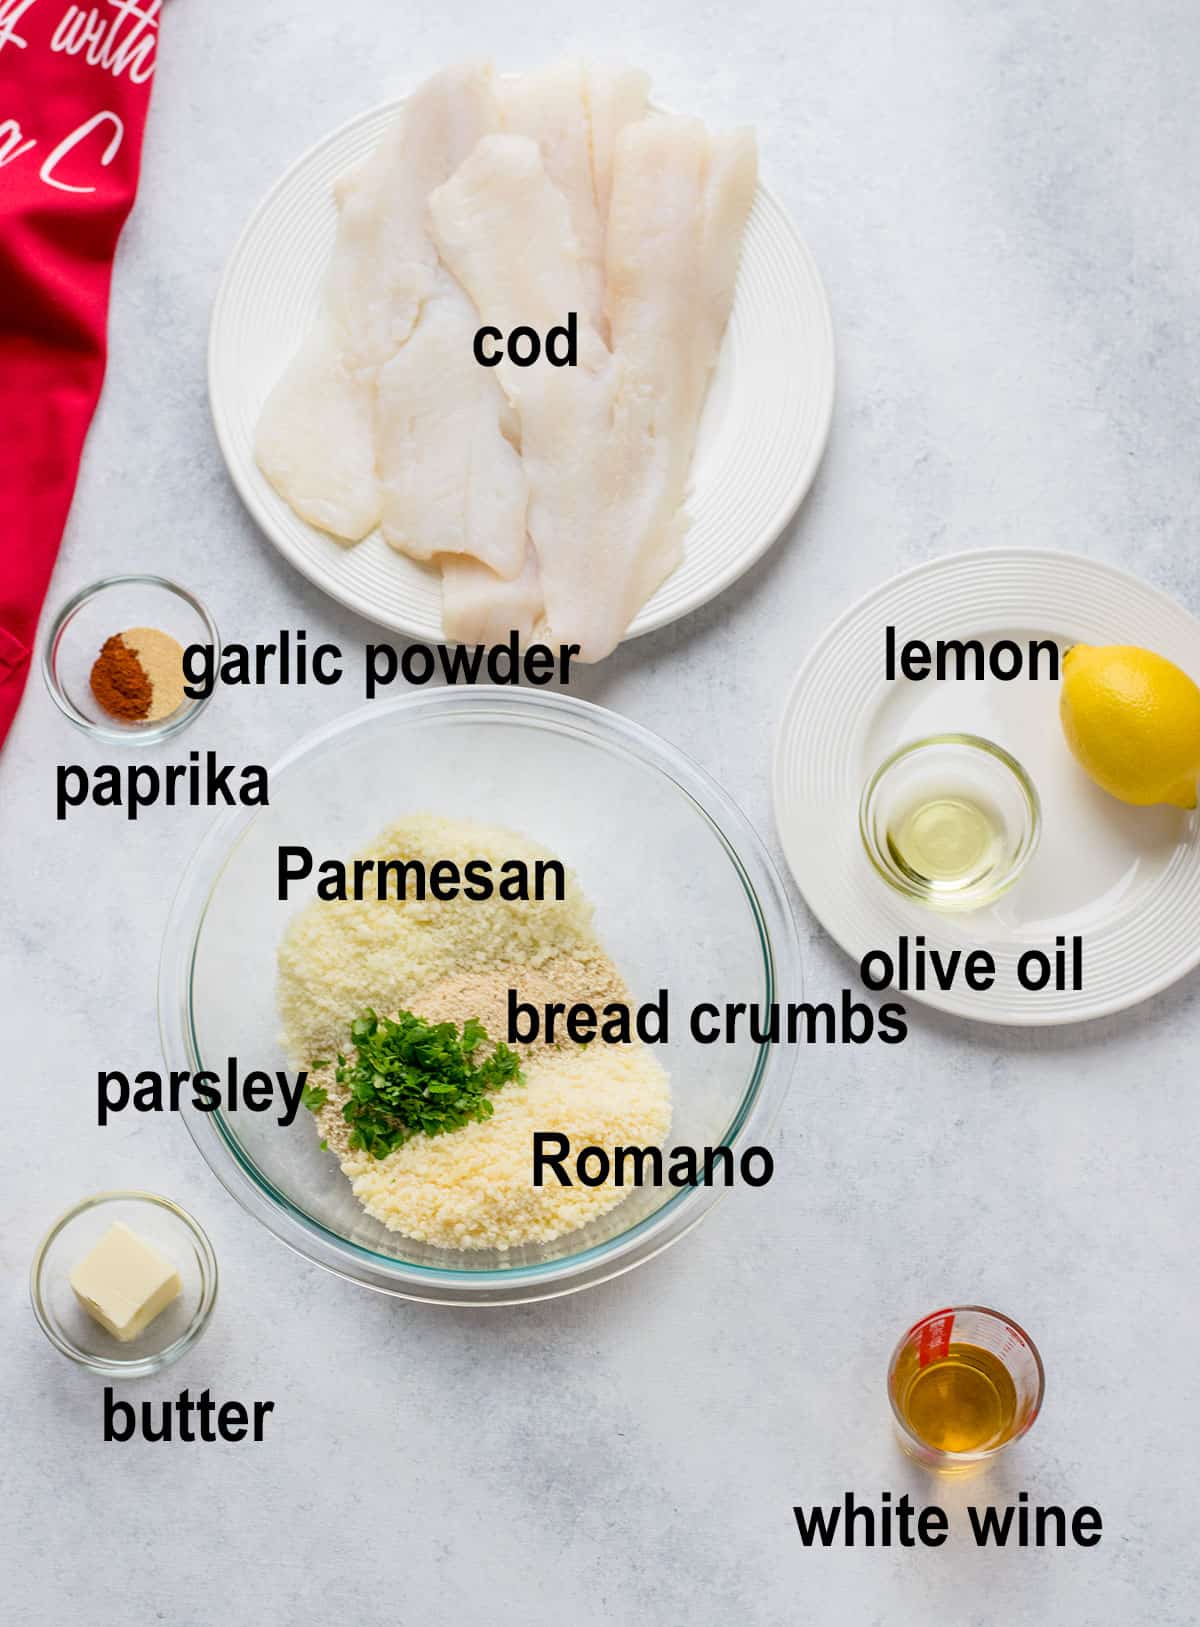 cod, bread crumbs, cheese, parsley, lemon, oil, wine, butter, seasonings